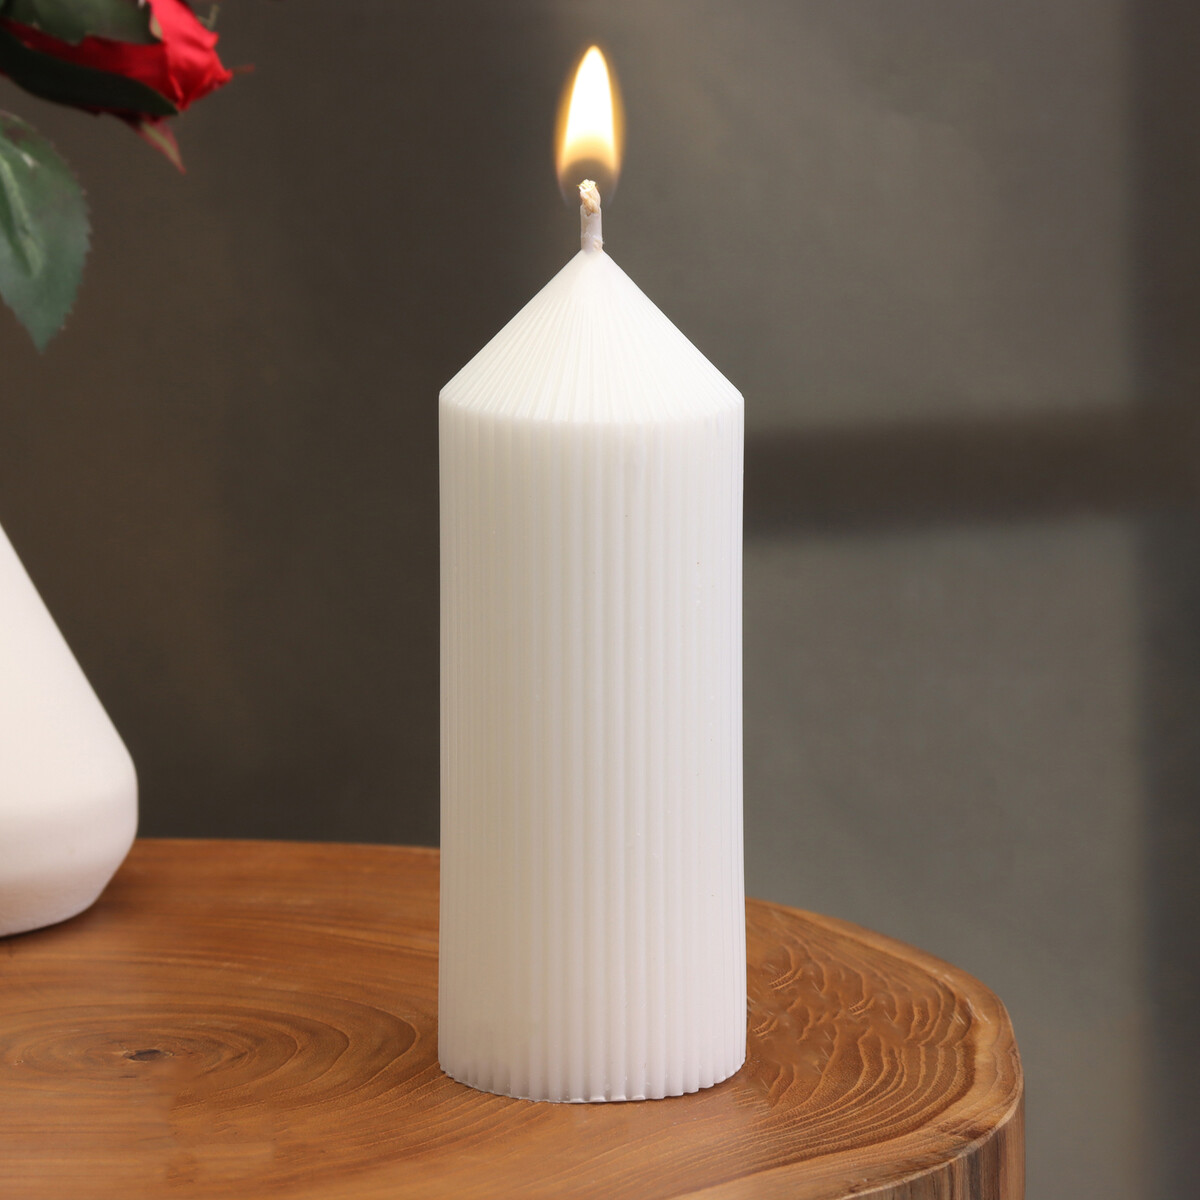 Свеча-цилиндр с гранями, 5х13 см, белая, 10 ч свеча декоративная тонкая с гранями 2х26см пальмовый воск белая 2 ч